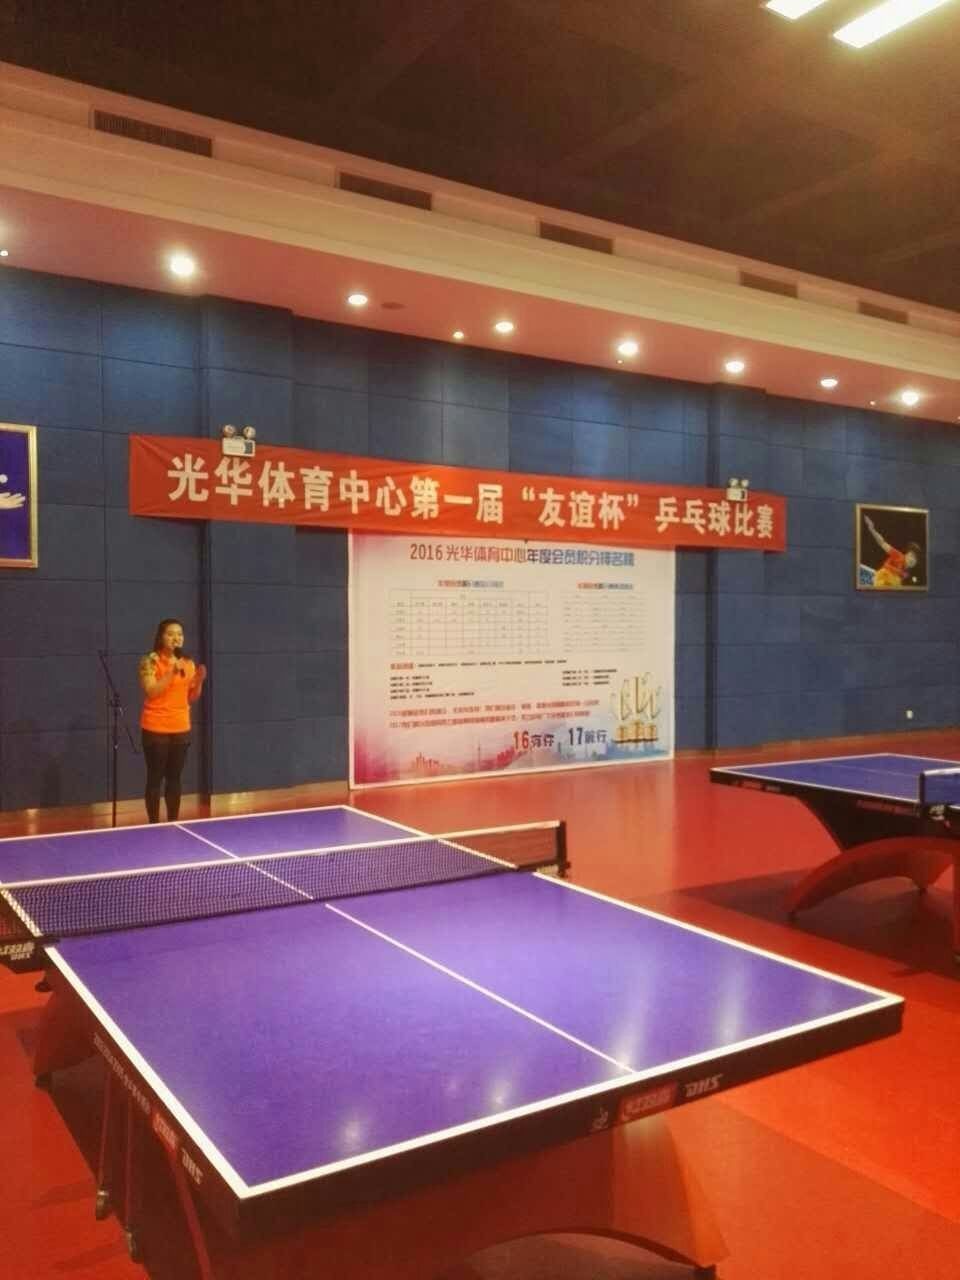 【组图】光华体育中心第一届友谊杯乒乓球比